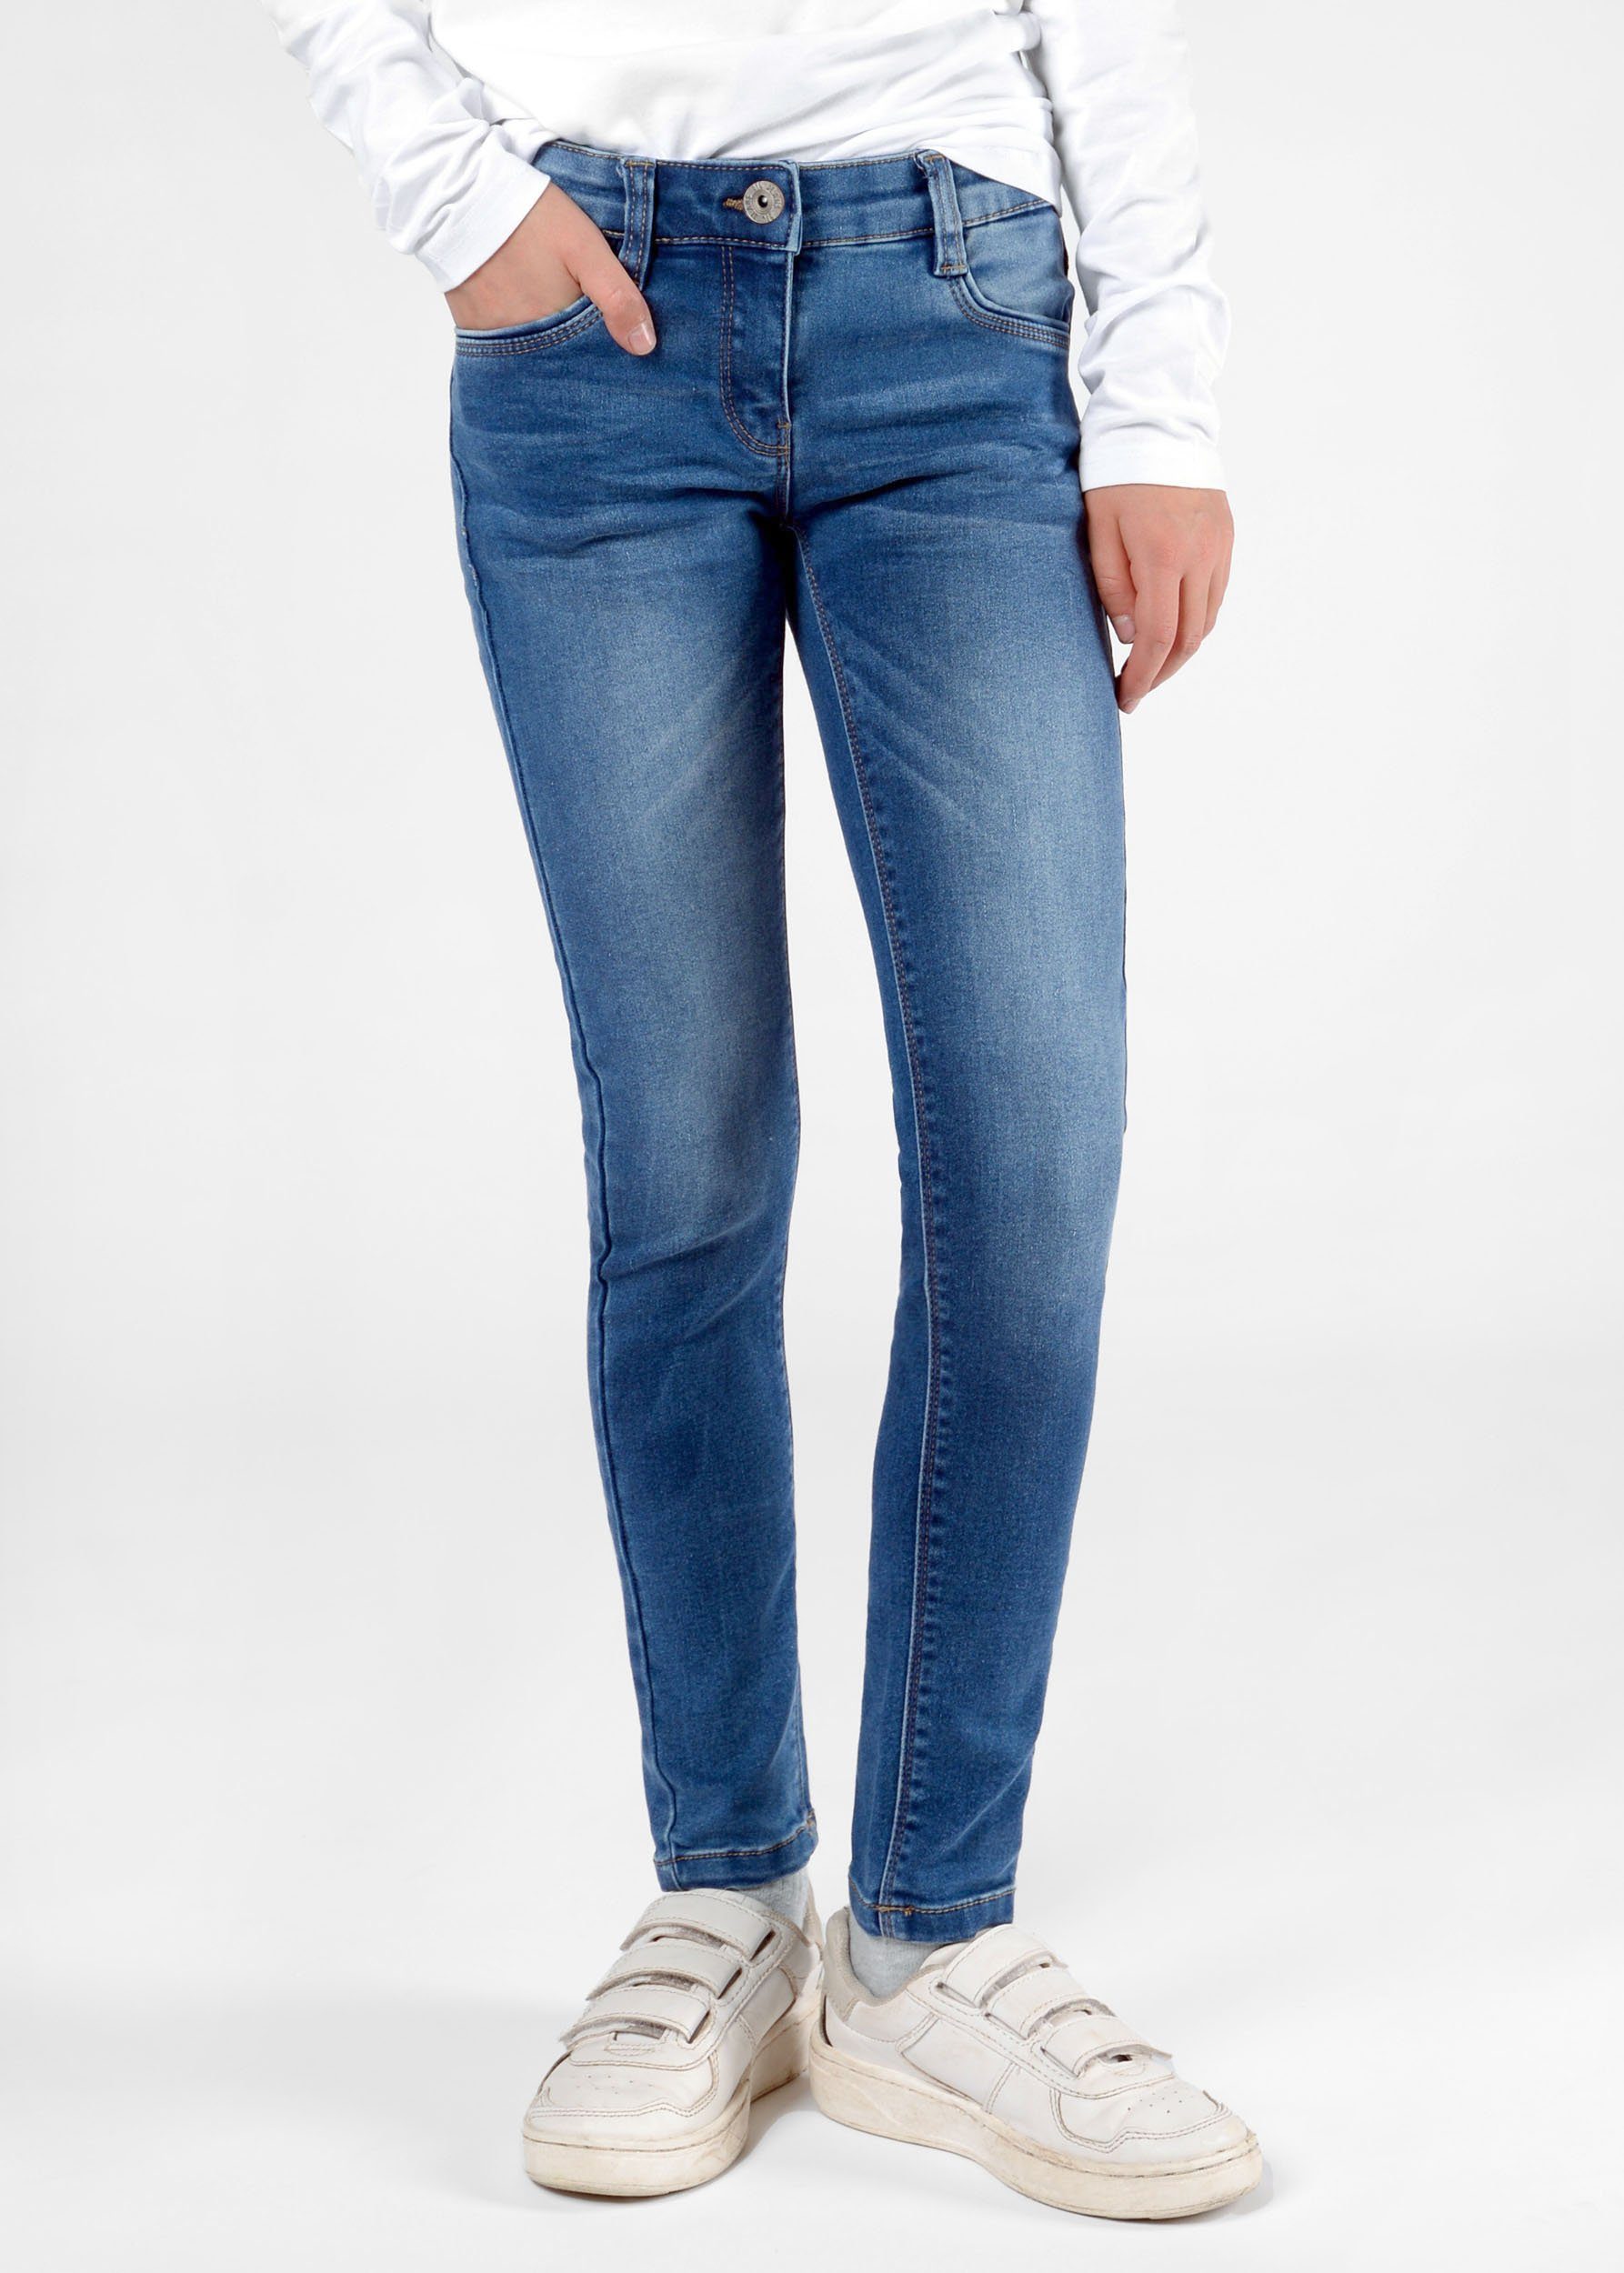 weitenverstellbarer Jeans schmal Mädchen Innenbund, STACCATO Skinny Denim Regular-fit-Jeans - Mid Blue zulaufendes Hosenbein Kinder